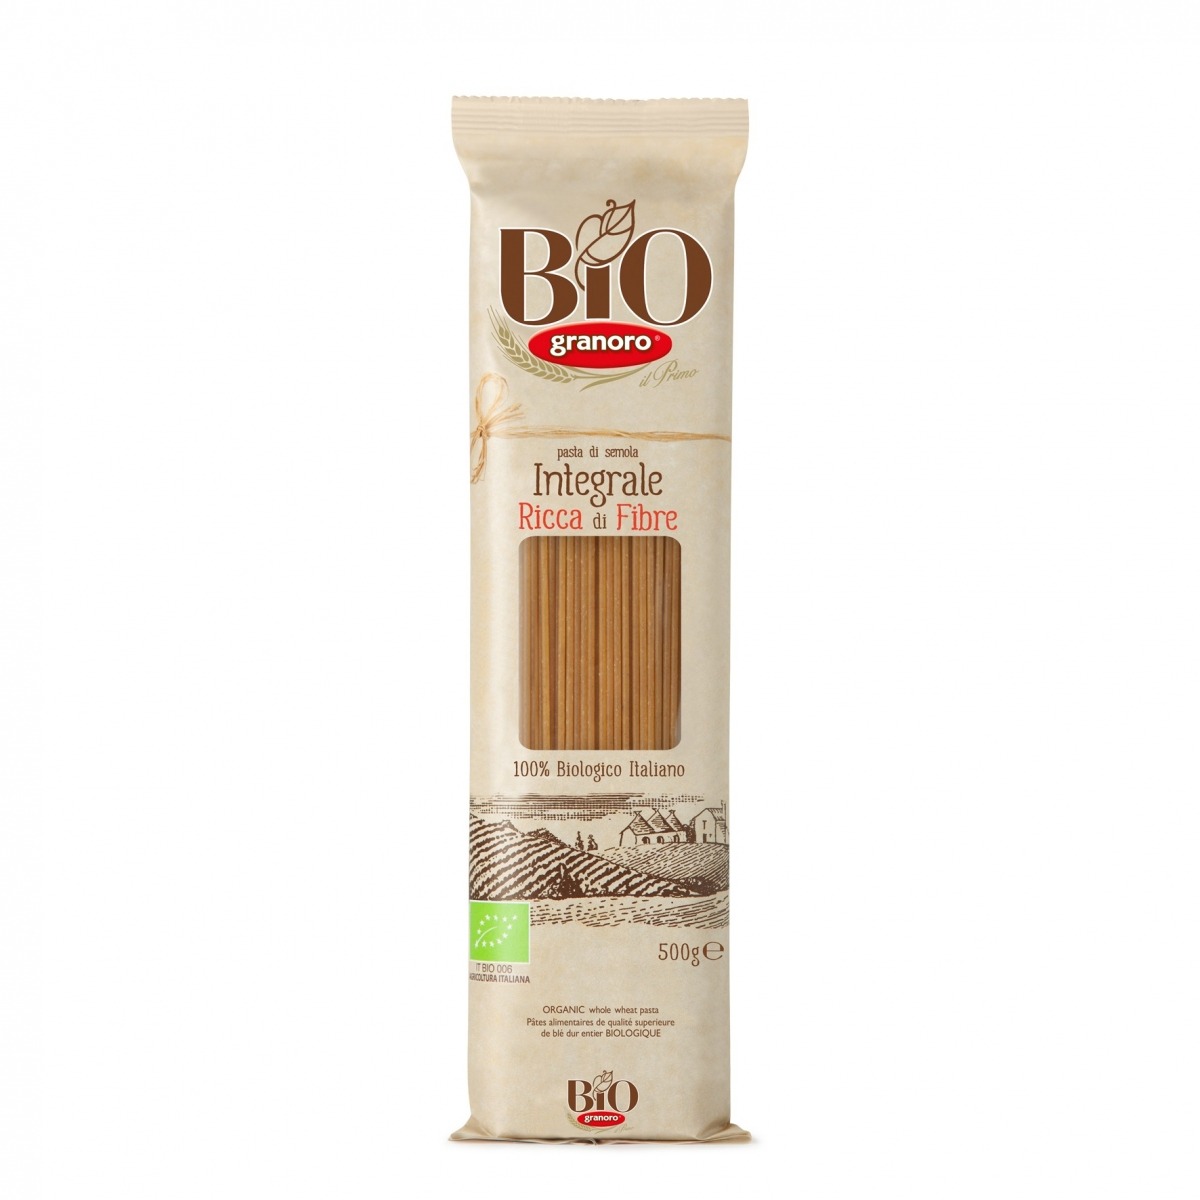 Pasta Grano Duro Spaghetti Integral Granoro 500g